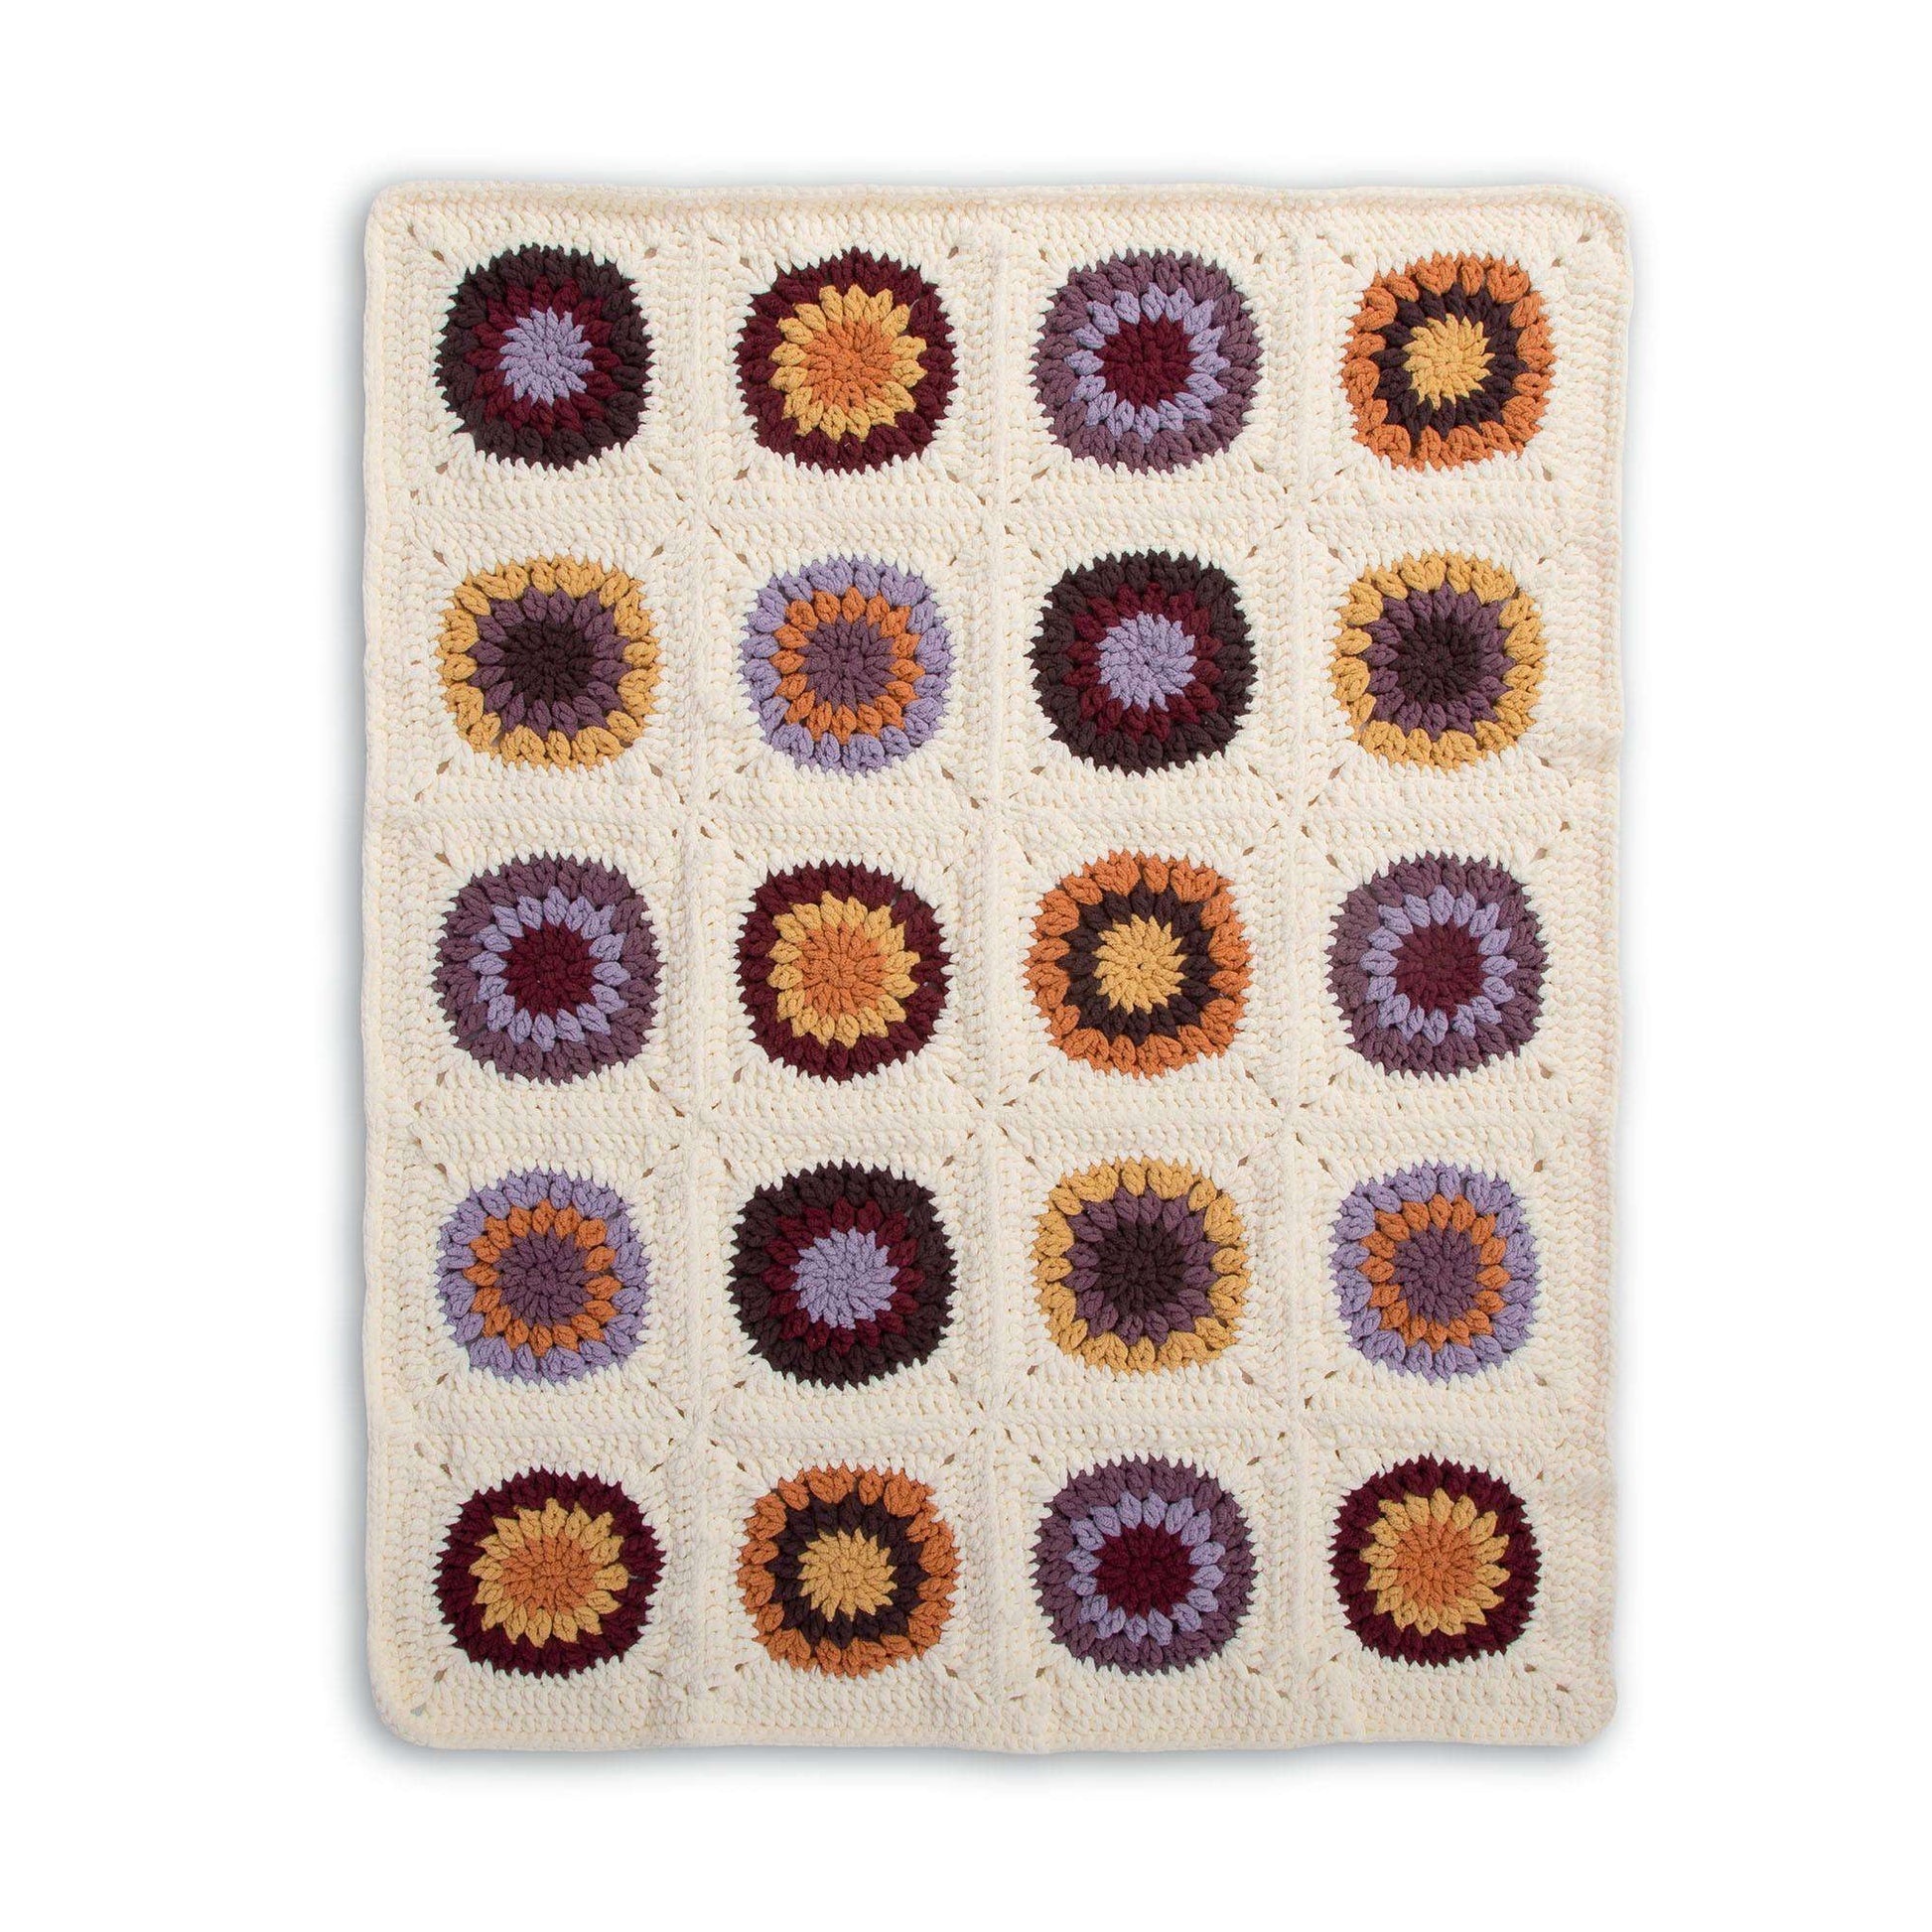 Free Bernat Crochet Modern Motif Blanket Pattern